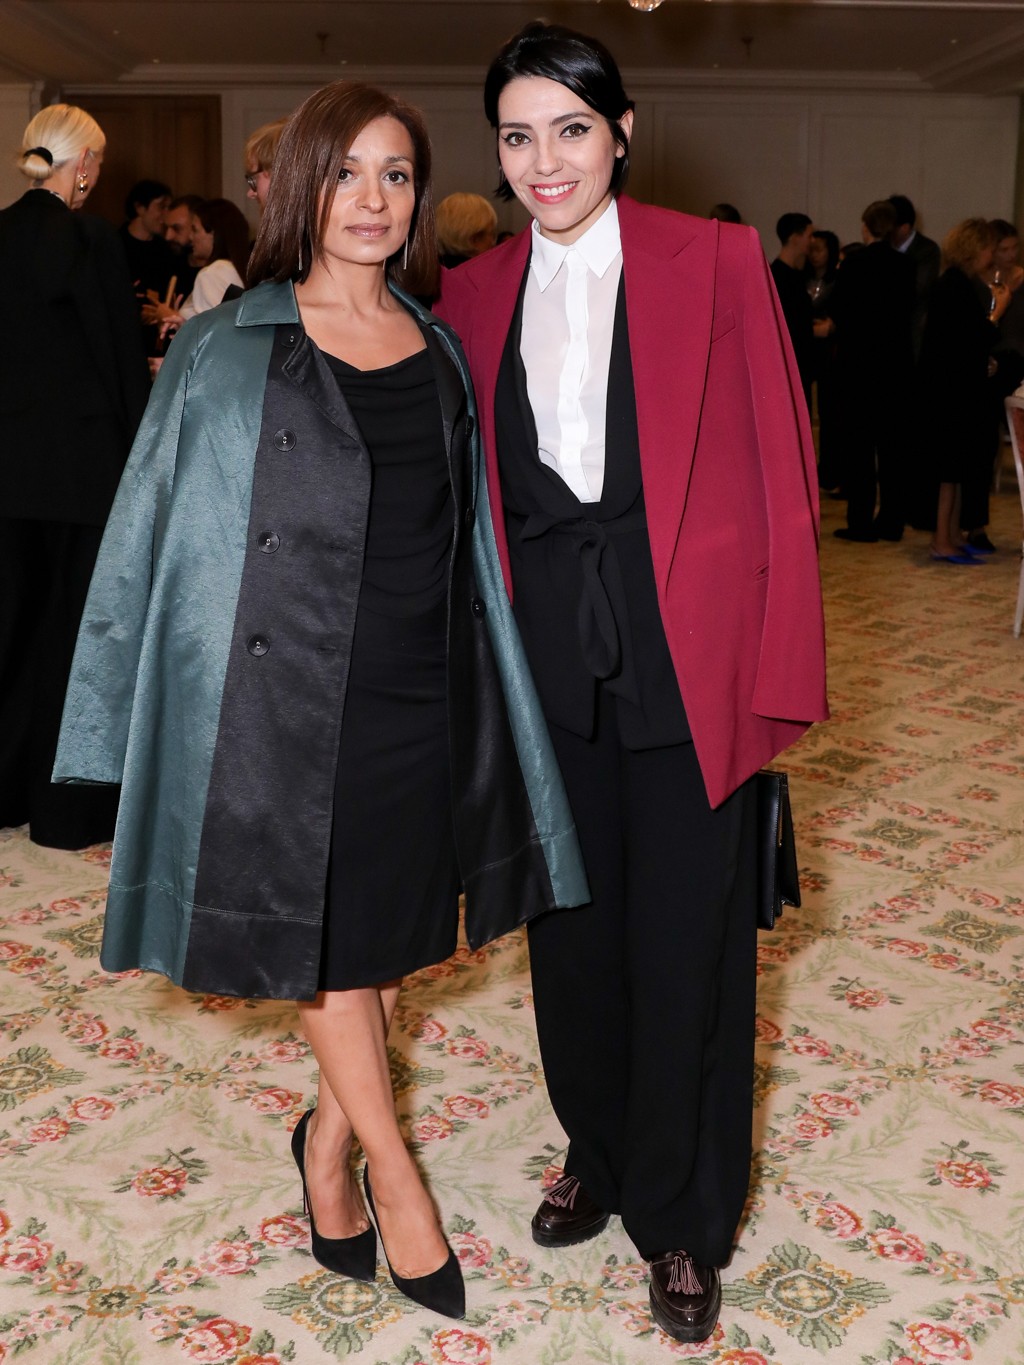 Sofia Lucas, editora-chefe da Vogue portuguesa, e Claudia Barros, diretora de moda do título